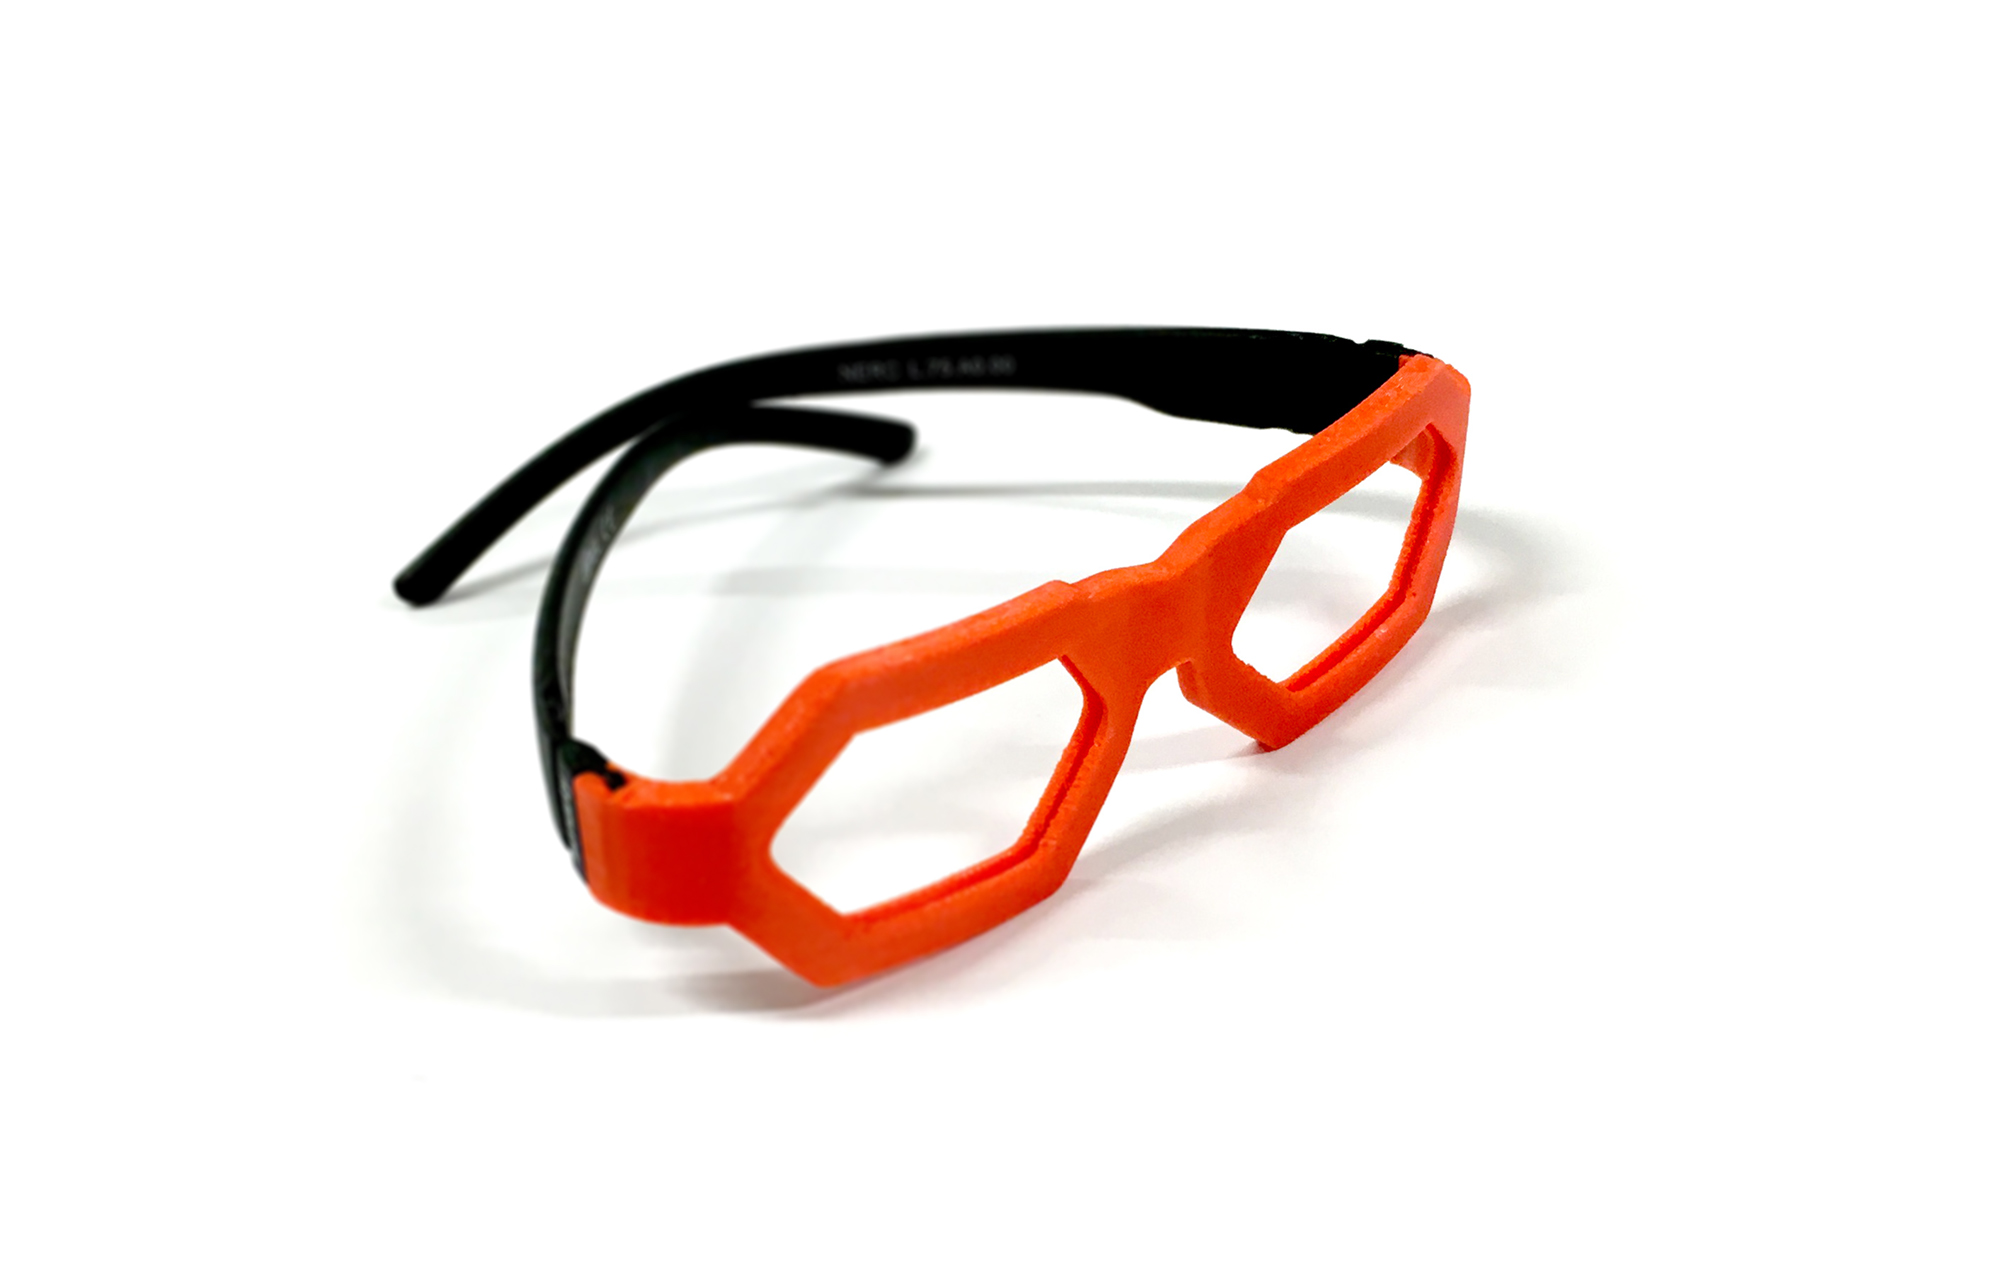 Anton Bulakh proponuje rozwiązanie, w którym oprawki okularów są współprojektowane przez dziecko, a następnie produkowane za pomocą drukarki 3D.